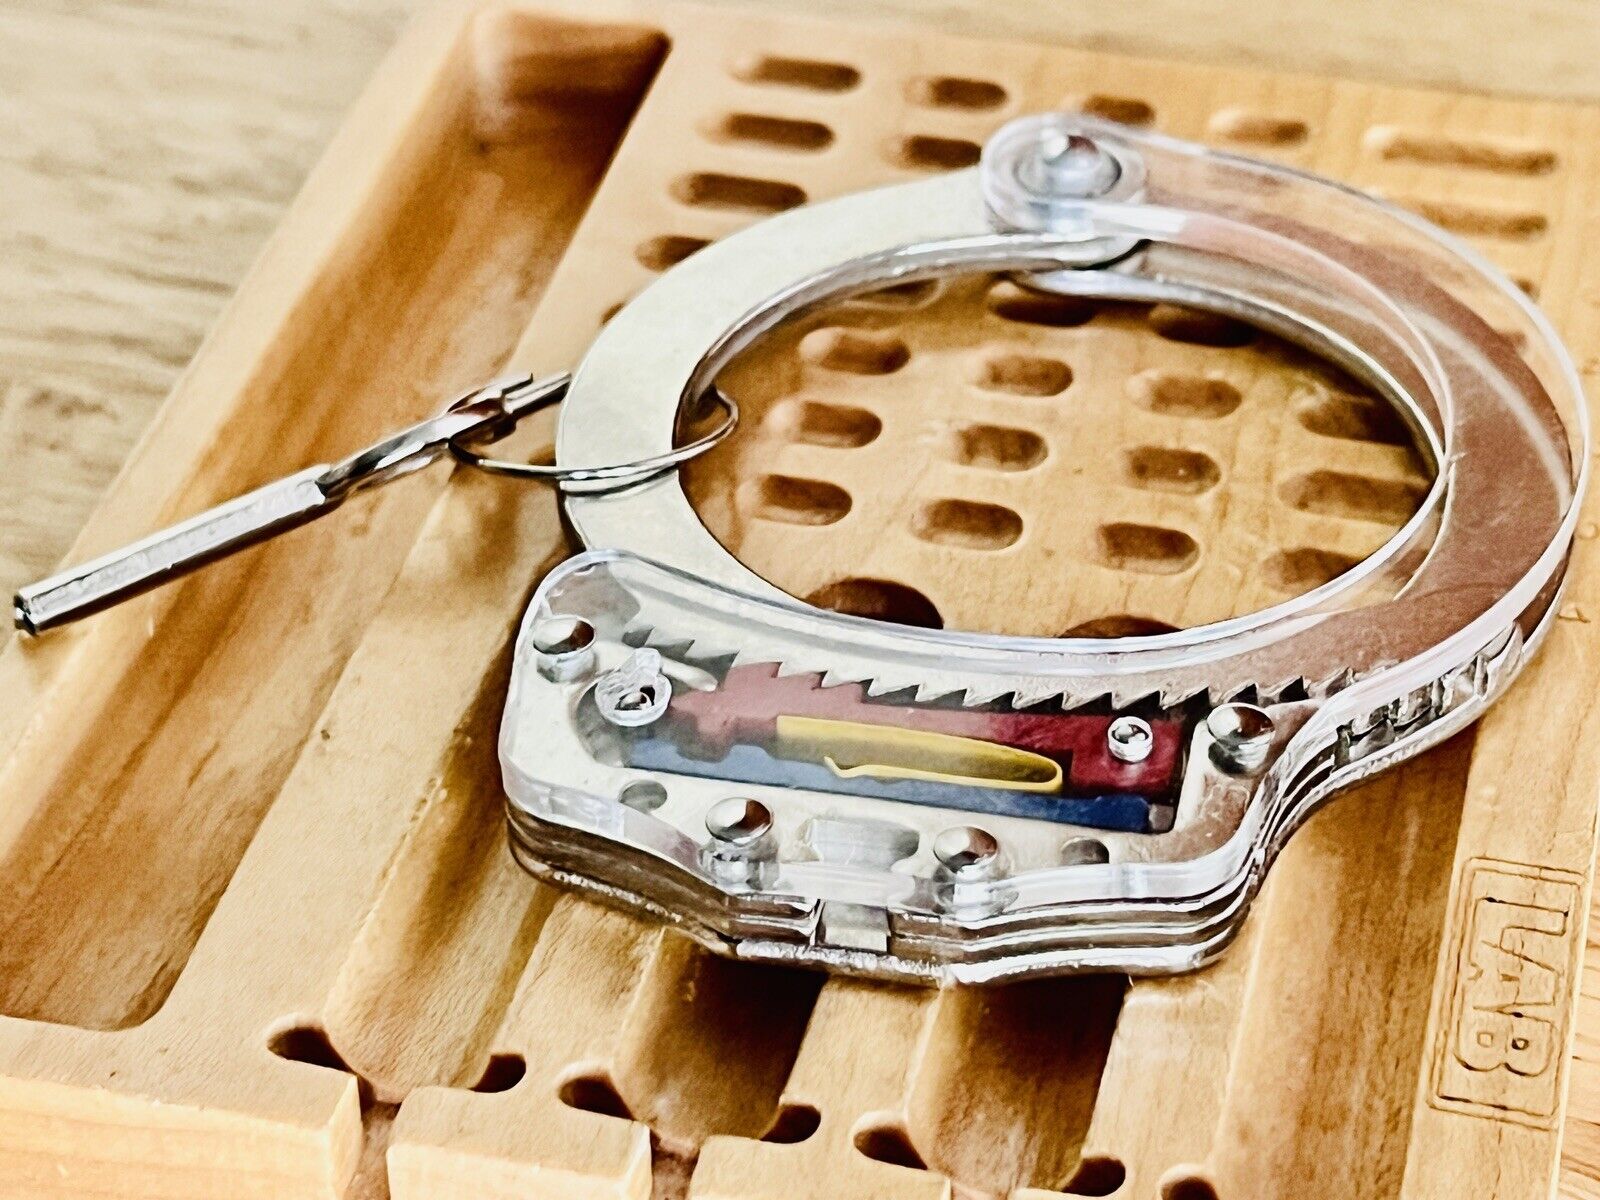 Handcuff Cutaway High Security Training Device W/ Key Locksport 